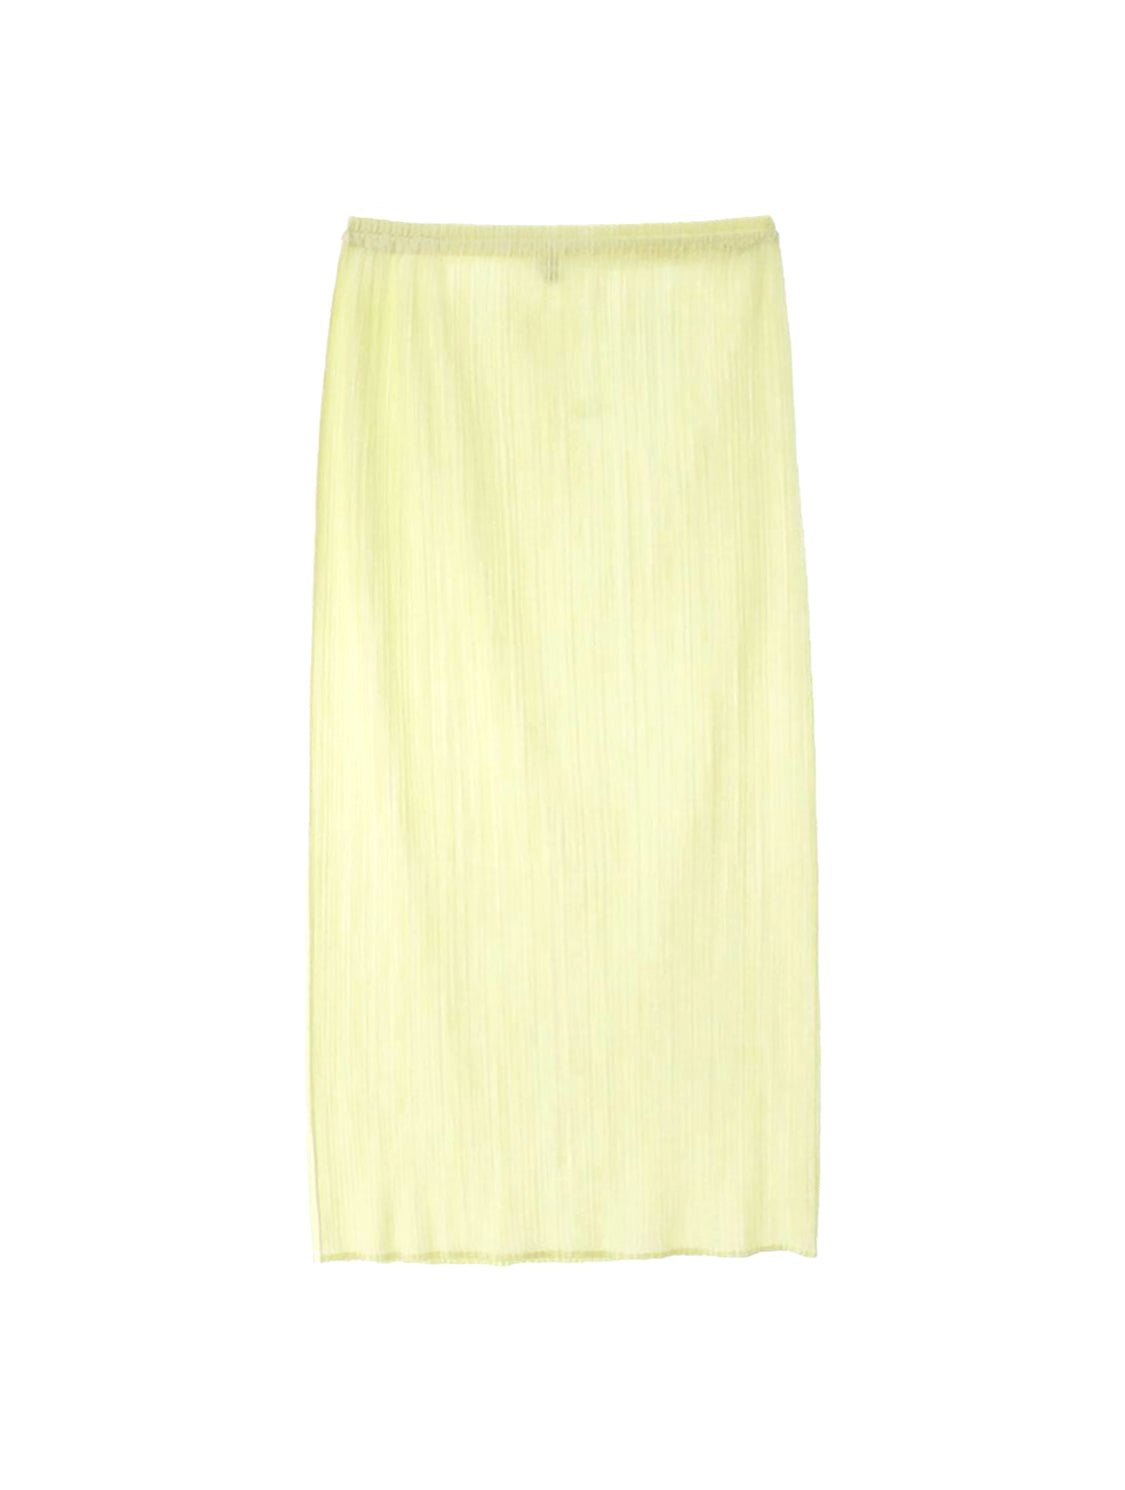 Issey Miyake 2000s Pleats Please Cream Yellow Skirt